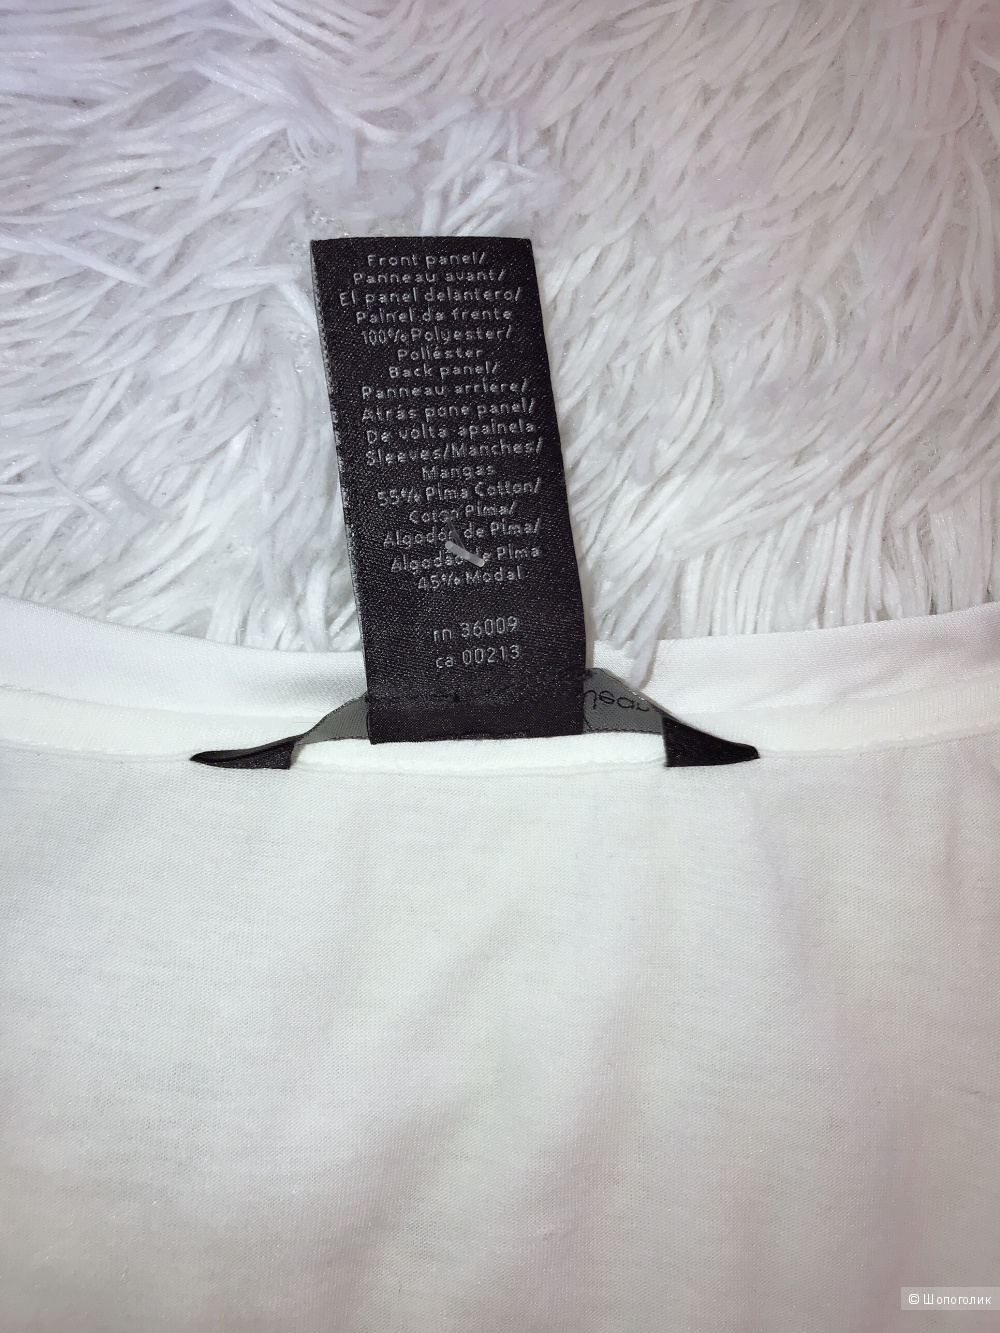 Юбка Armani Jeans, футболка Calvin Klein 46